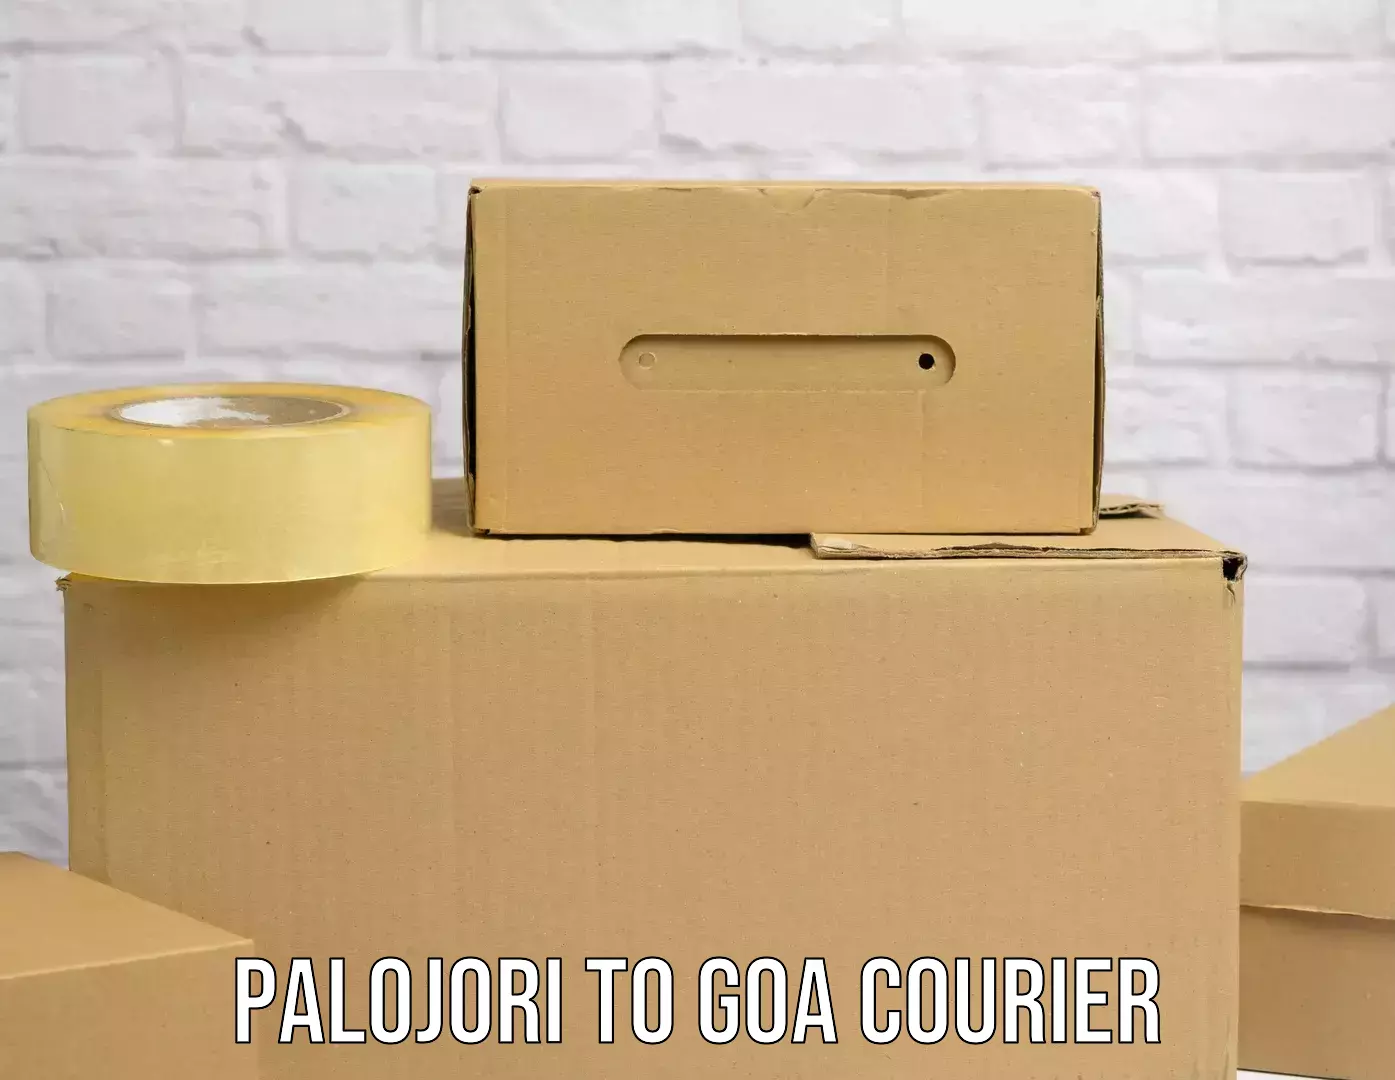 Express courier capabilities Palojori to South Goa